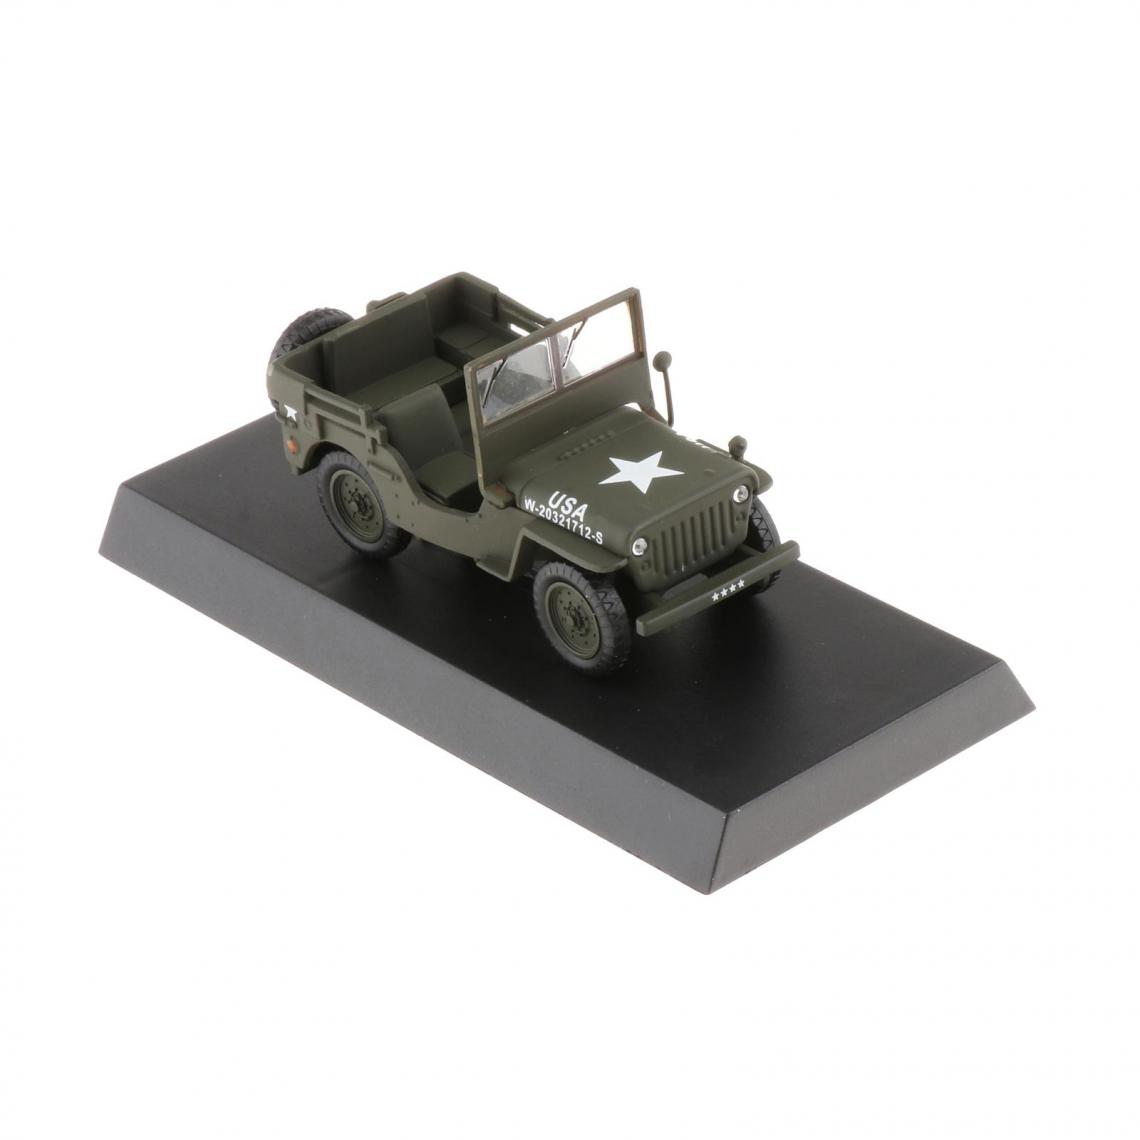 marque generique - Jeep 1947 USA 20296521, Vert Ouvert de Voiture-1/43 Échelle Miniature: Jouet de Voiture pour Enfants - Voitures